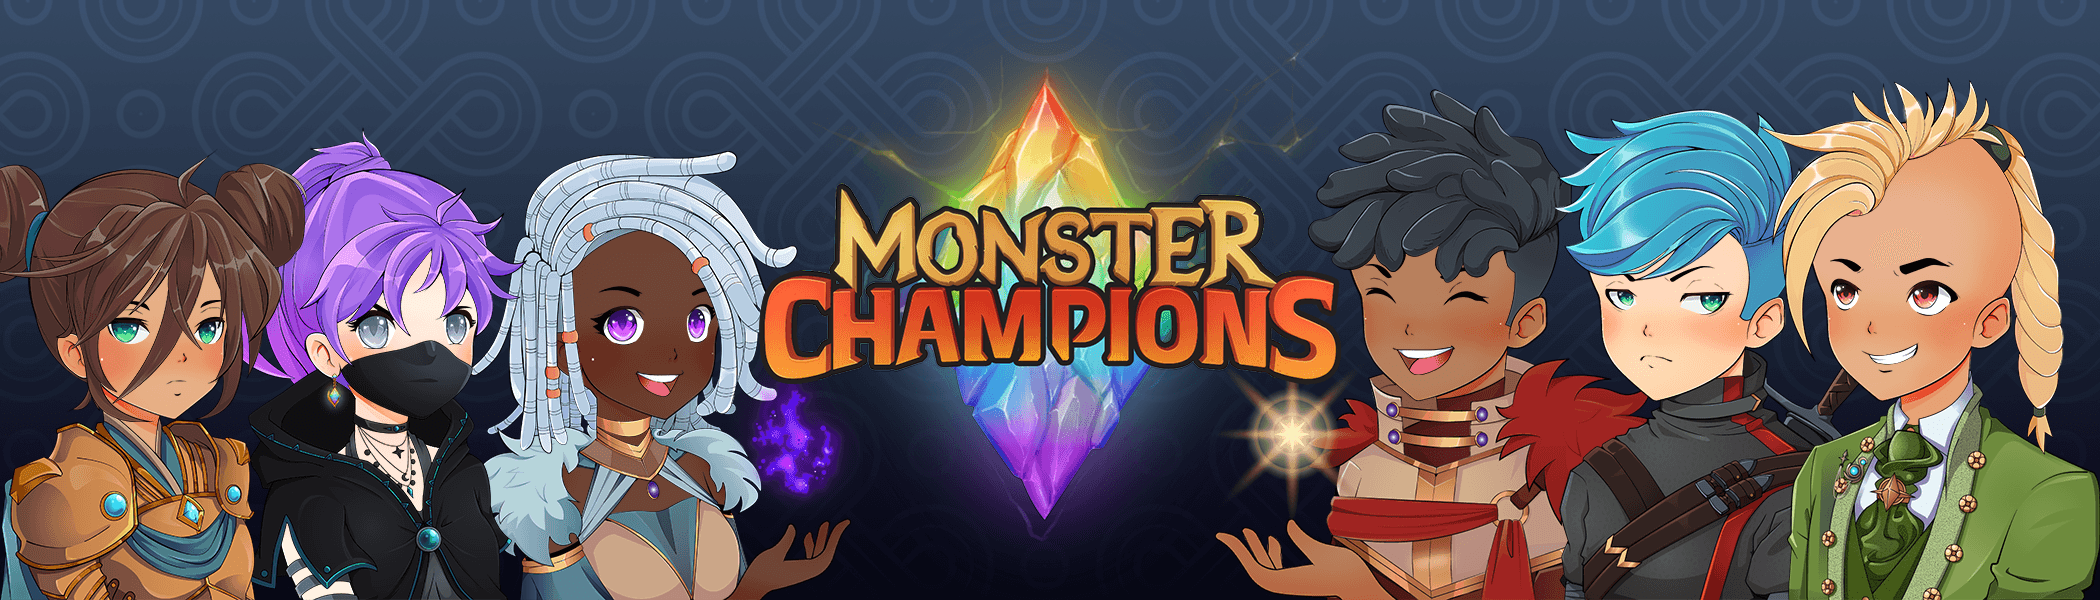 MonsterChampions_Deployer Banner